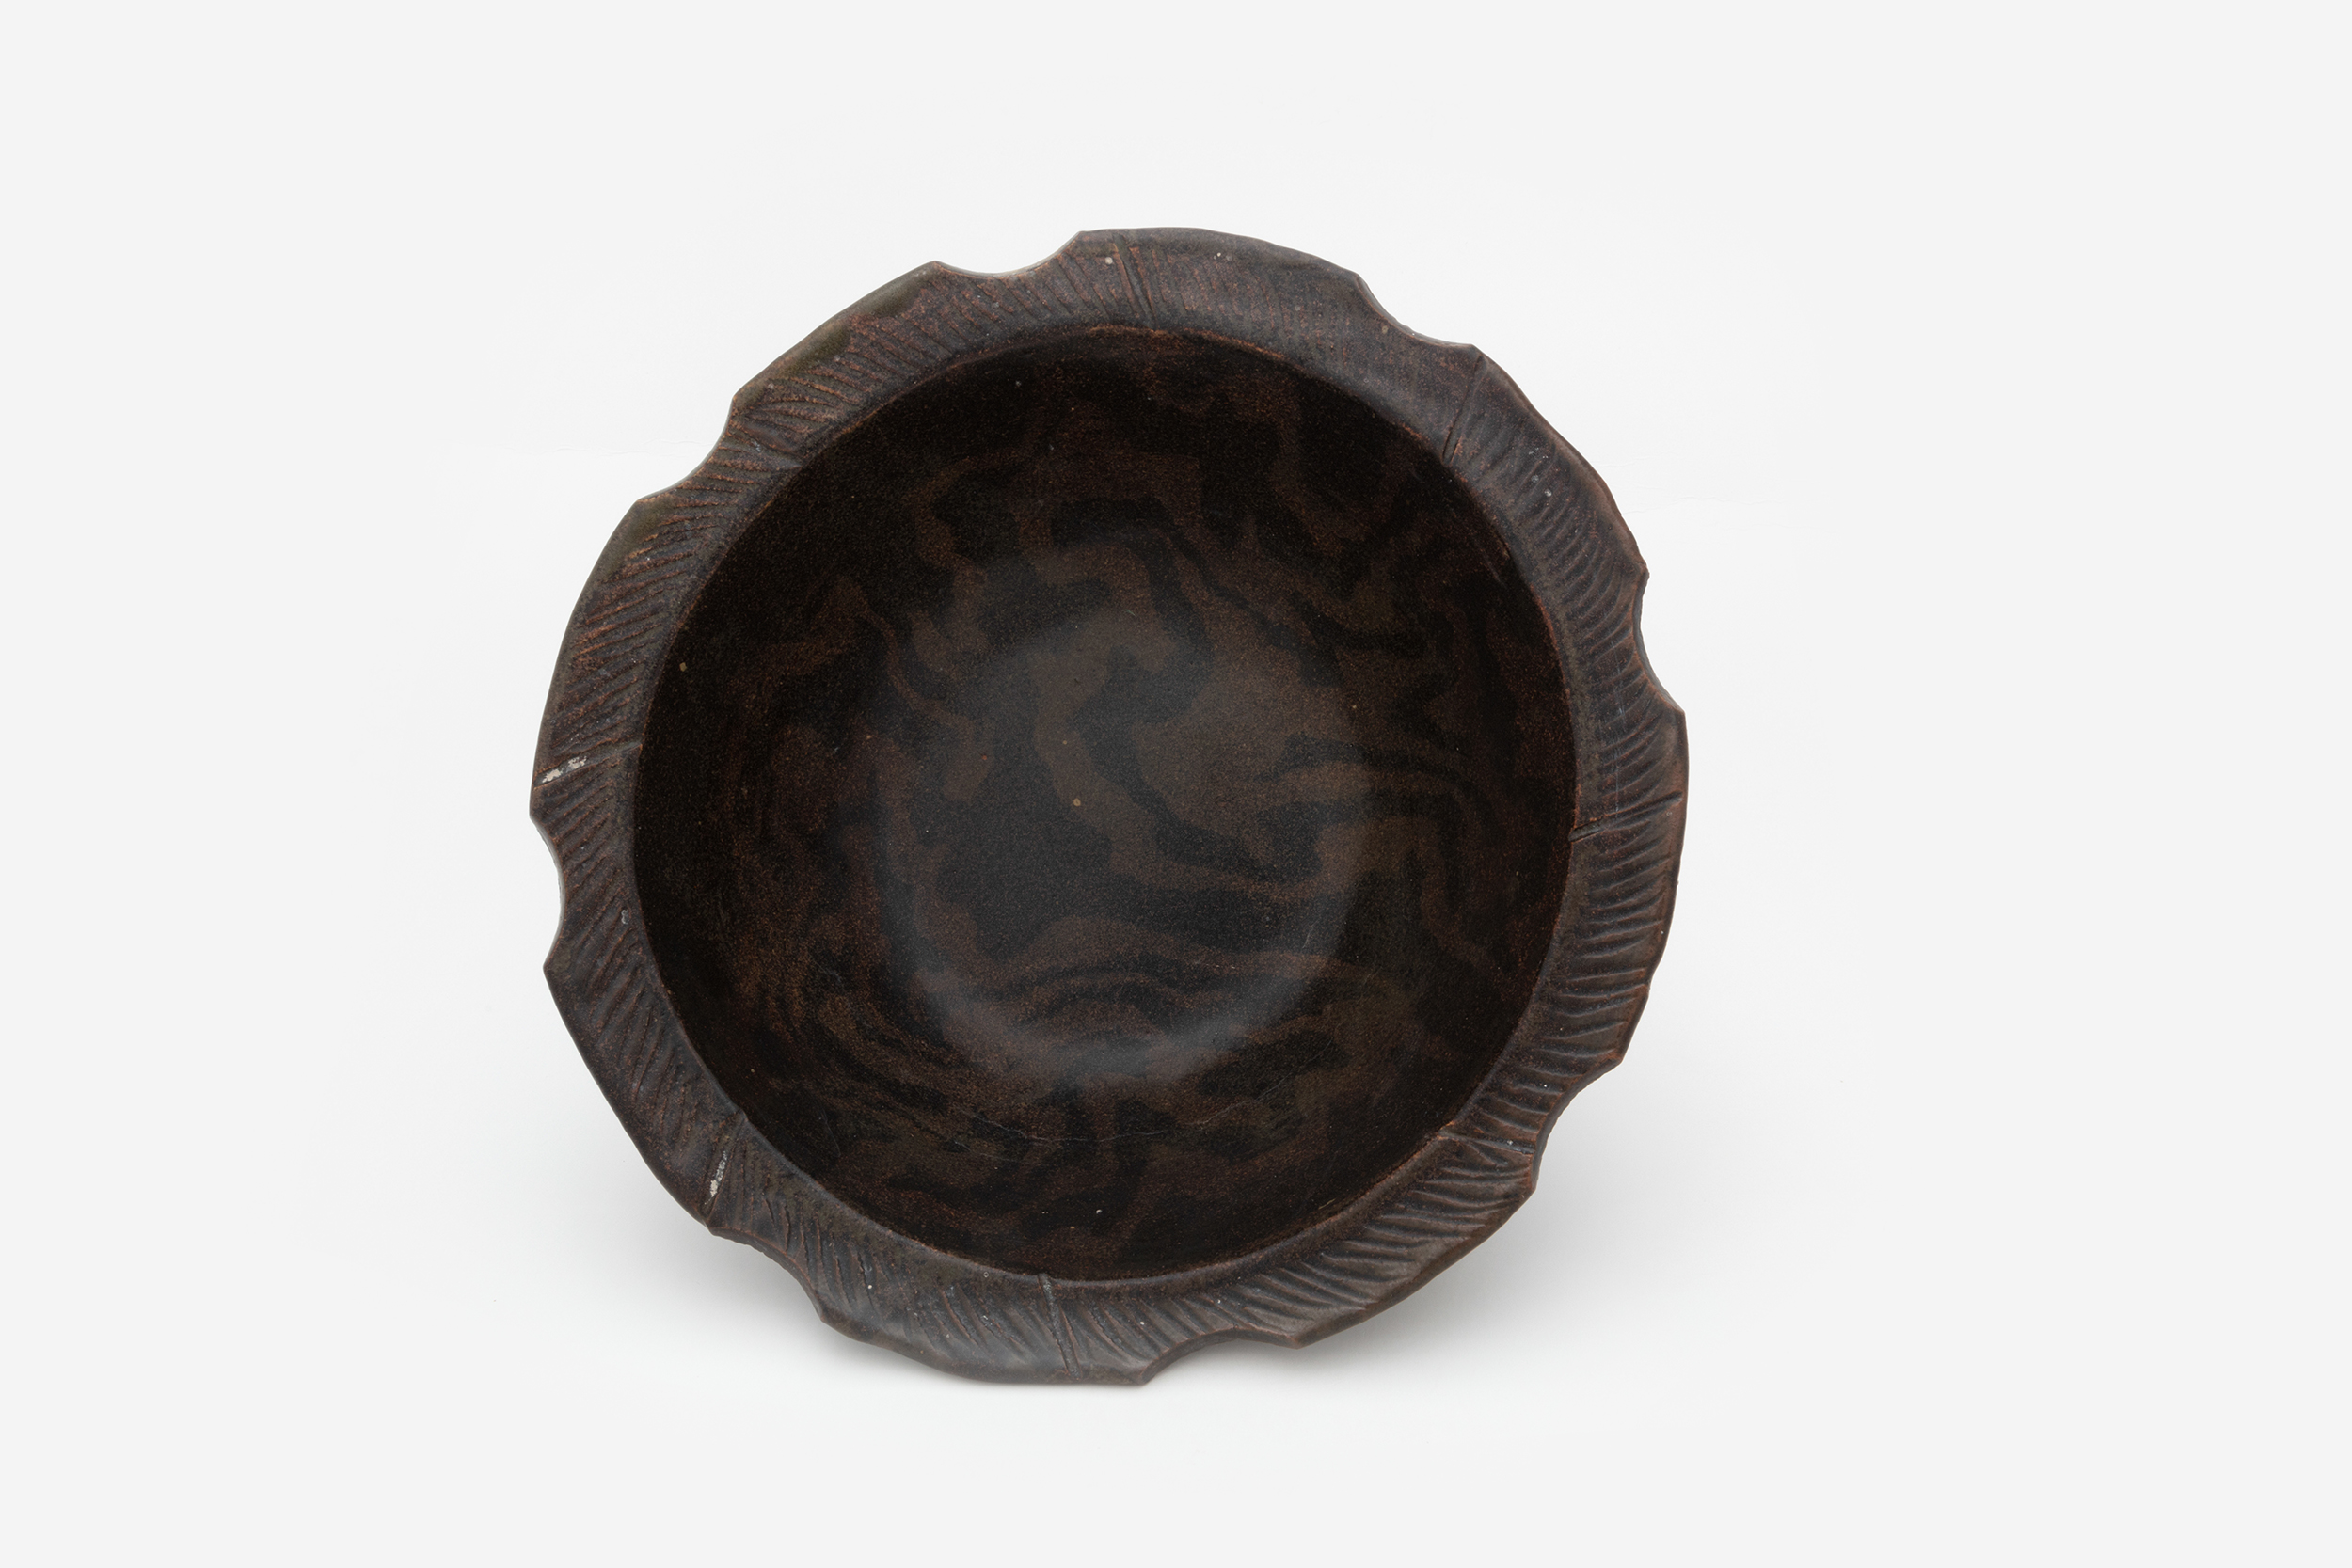 Hylton Nel - Dark marbled bowl with spiralled edge, 15 July 2013